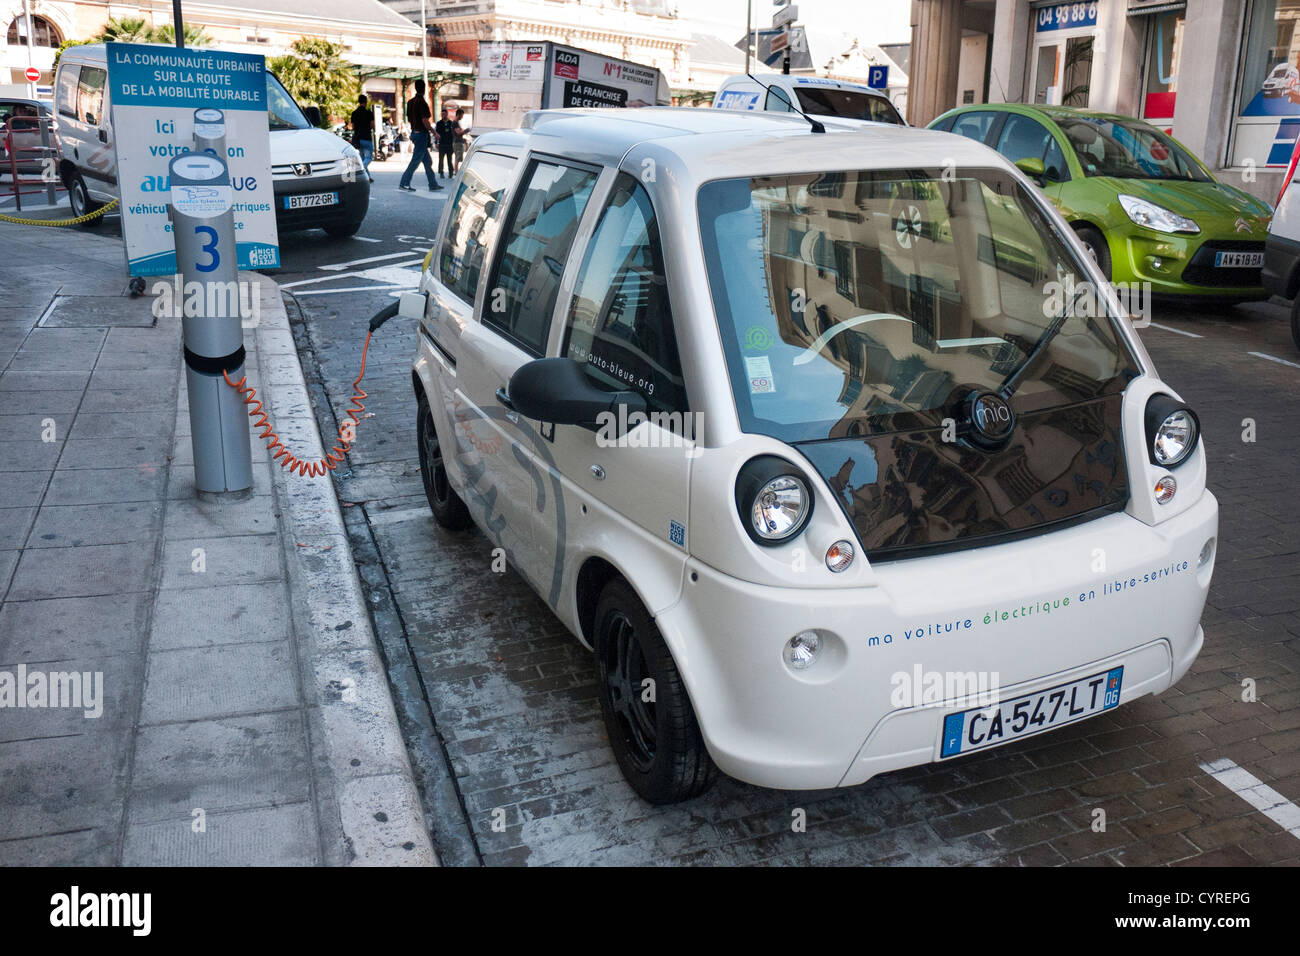 Voiture électrique point de recharge à nouveau à Nice, France Banque D'Images